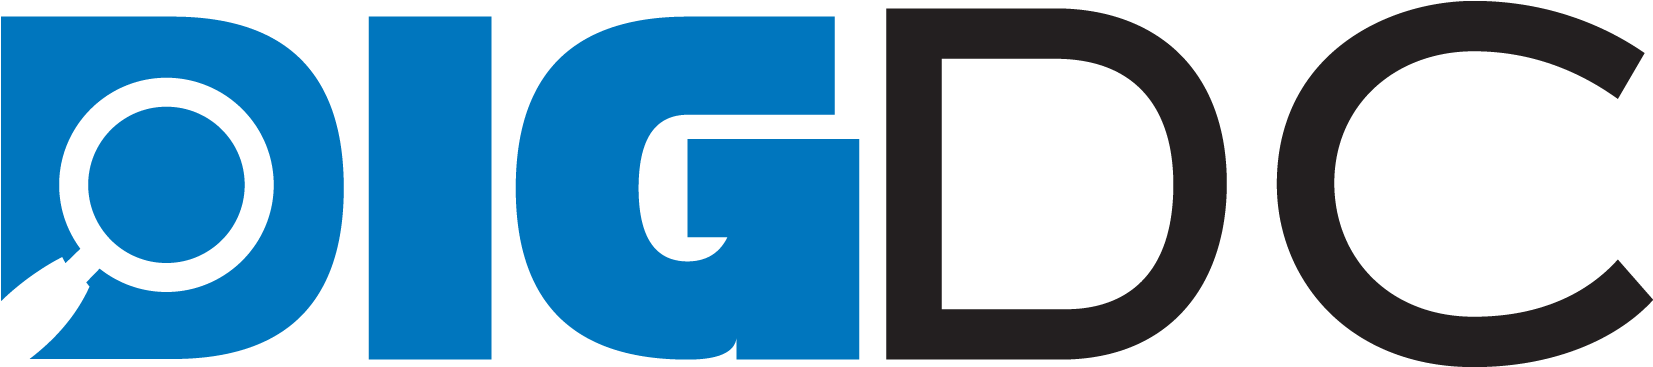 Dig Dc Logo Png - Dig Dc Logo Png (1725x450)